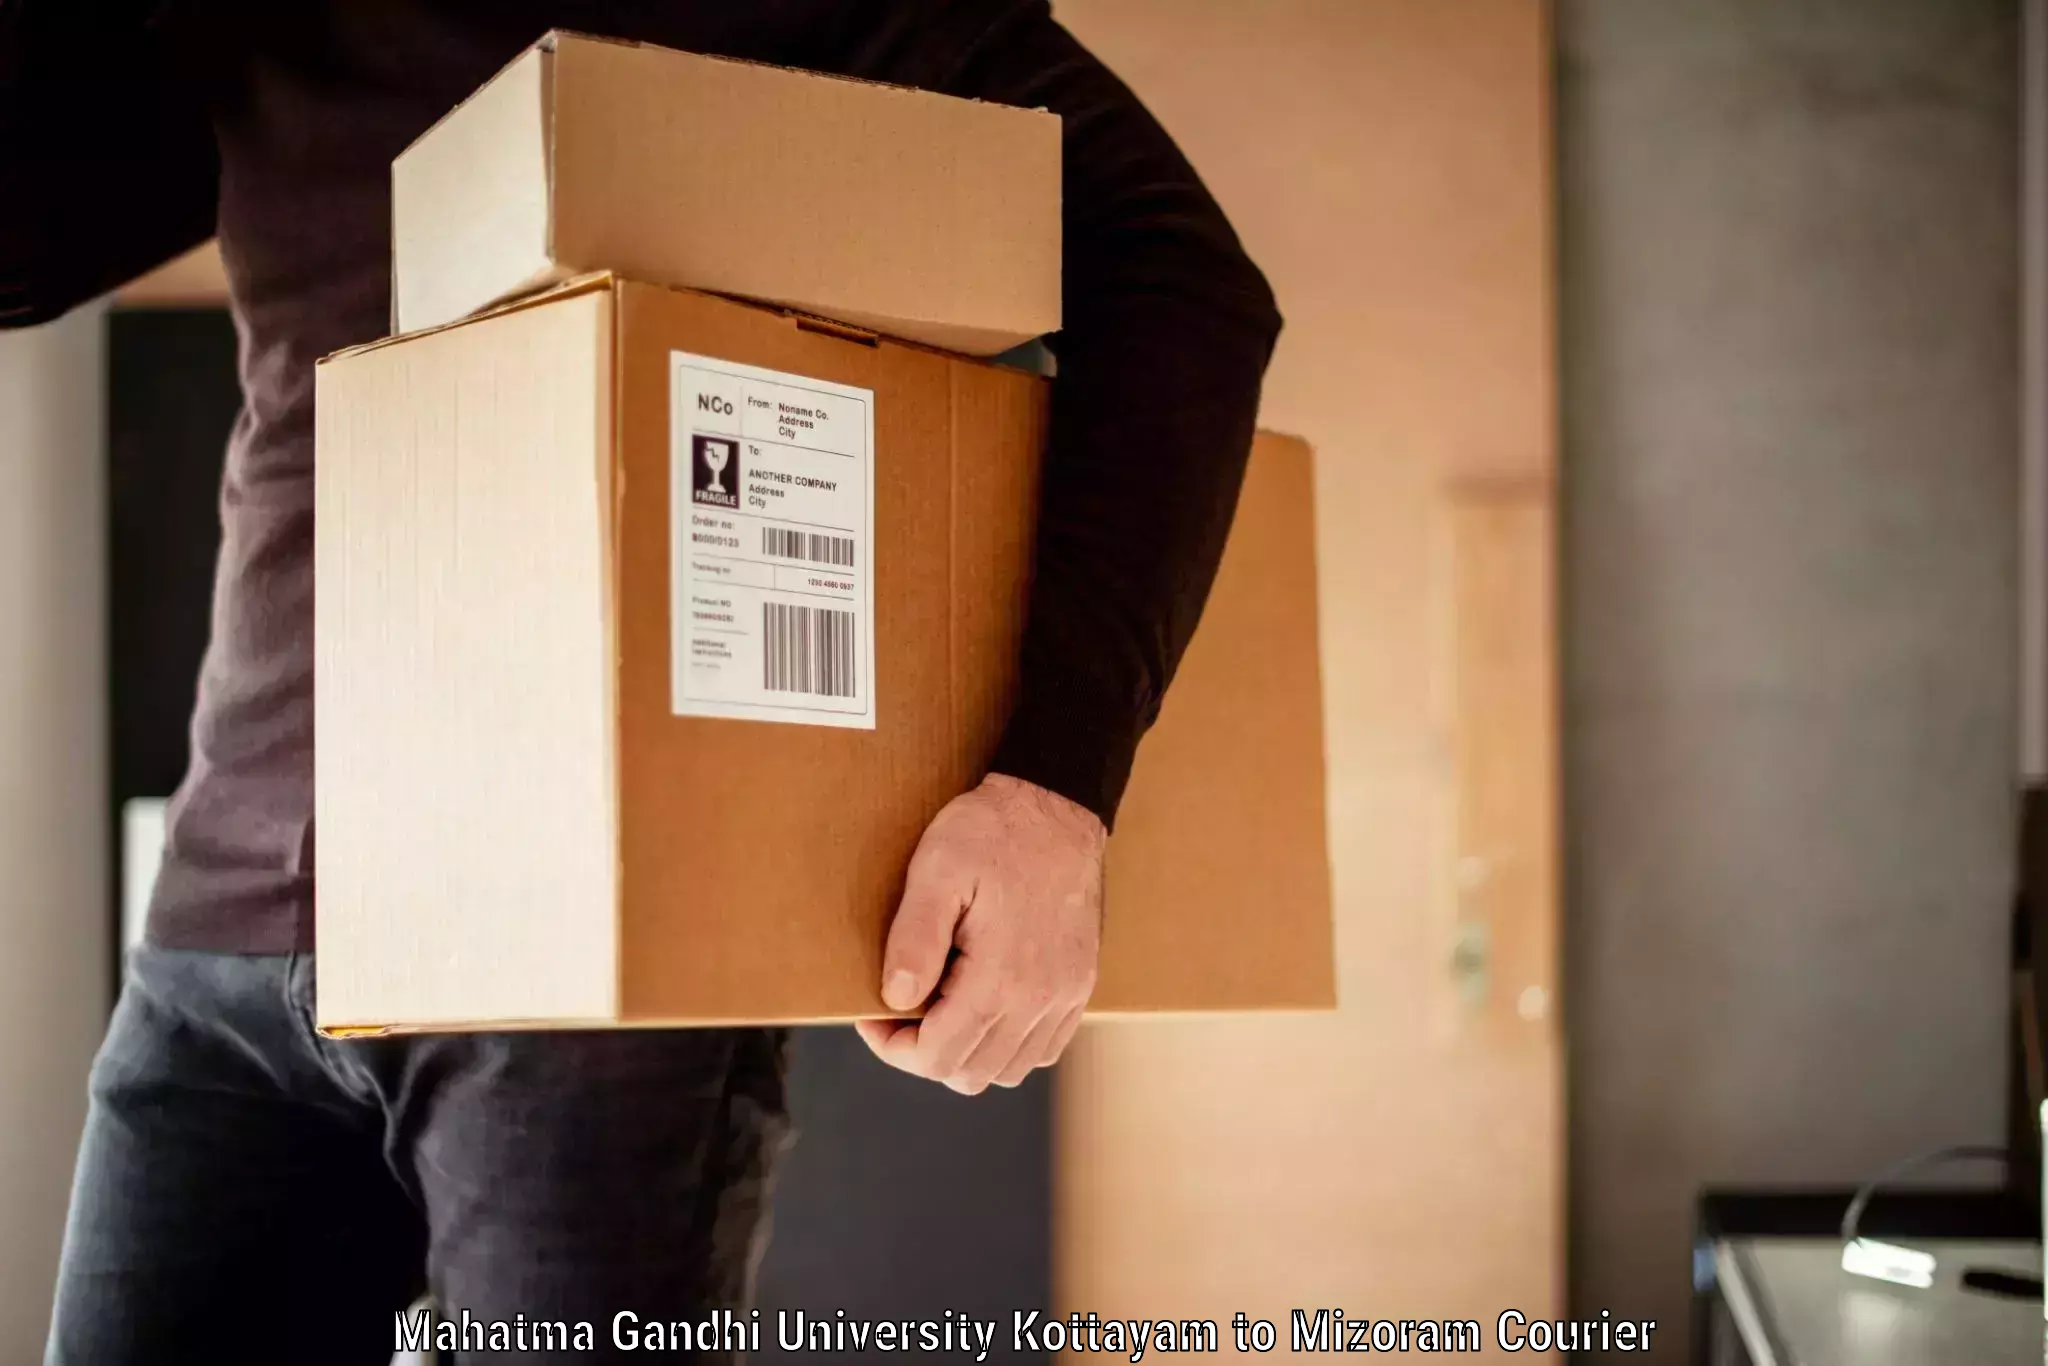 Luggage delivery optimization Mahatma Gandhi University Kottayam to Aizawl